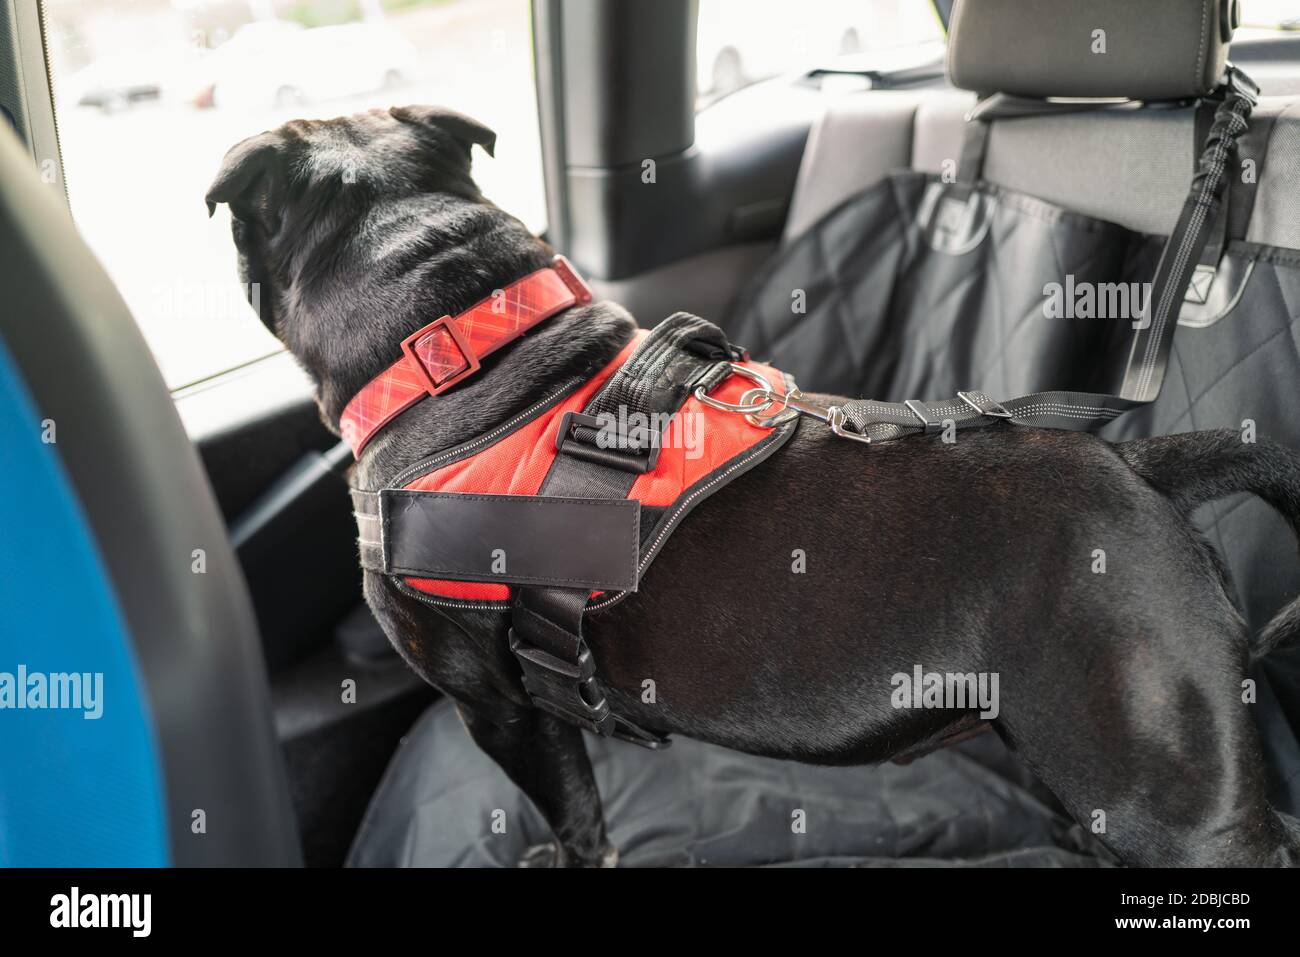 Cachorro De Boston Terrier Tumbado En Una Manta En El Asiento Trasero De Un  Coche. Ella Lleva Un Arnés Naranja Imagen de archivo - Imagen de mirando,  blanco: 214417089